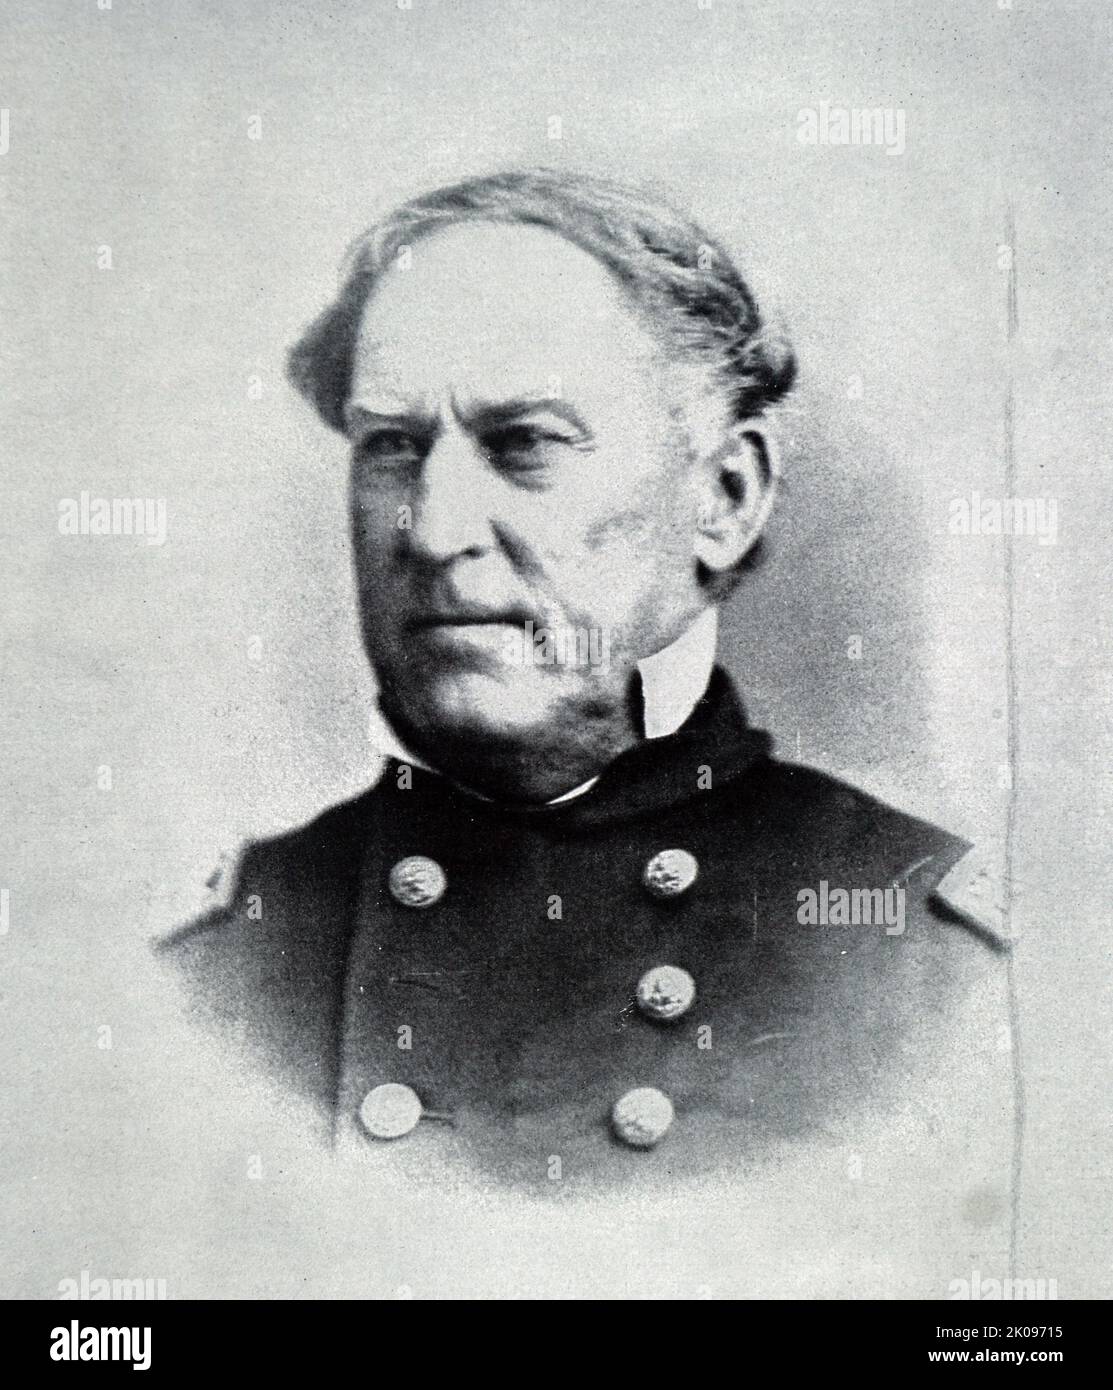 Admiral David Farragut. David Glasgow Farragut (5. Juli 1801 - 14. August 1870) war während des amerikanischen Bürgerkrieges Flaggenoffizier der US-Marine. Stockfoto